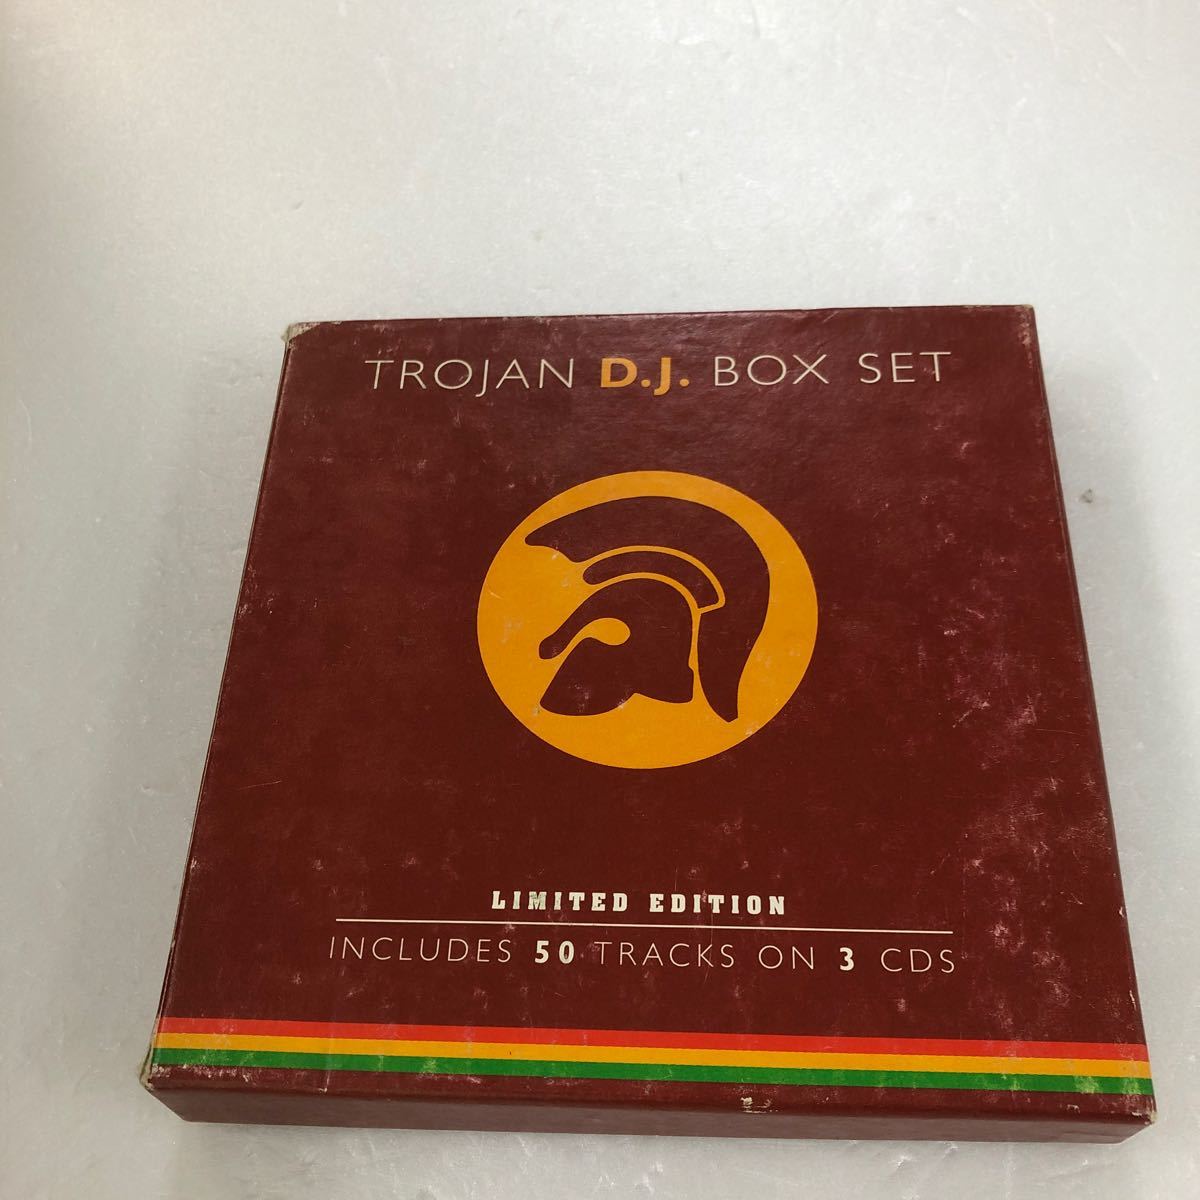 Yahoo!オークション -「trojan box set」(音楽) の落札相場・落札価格